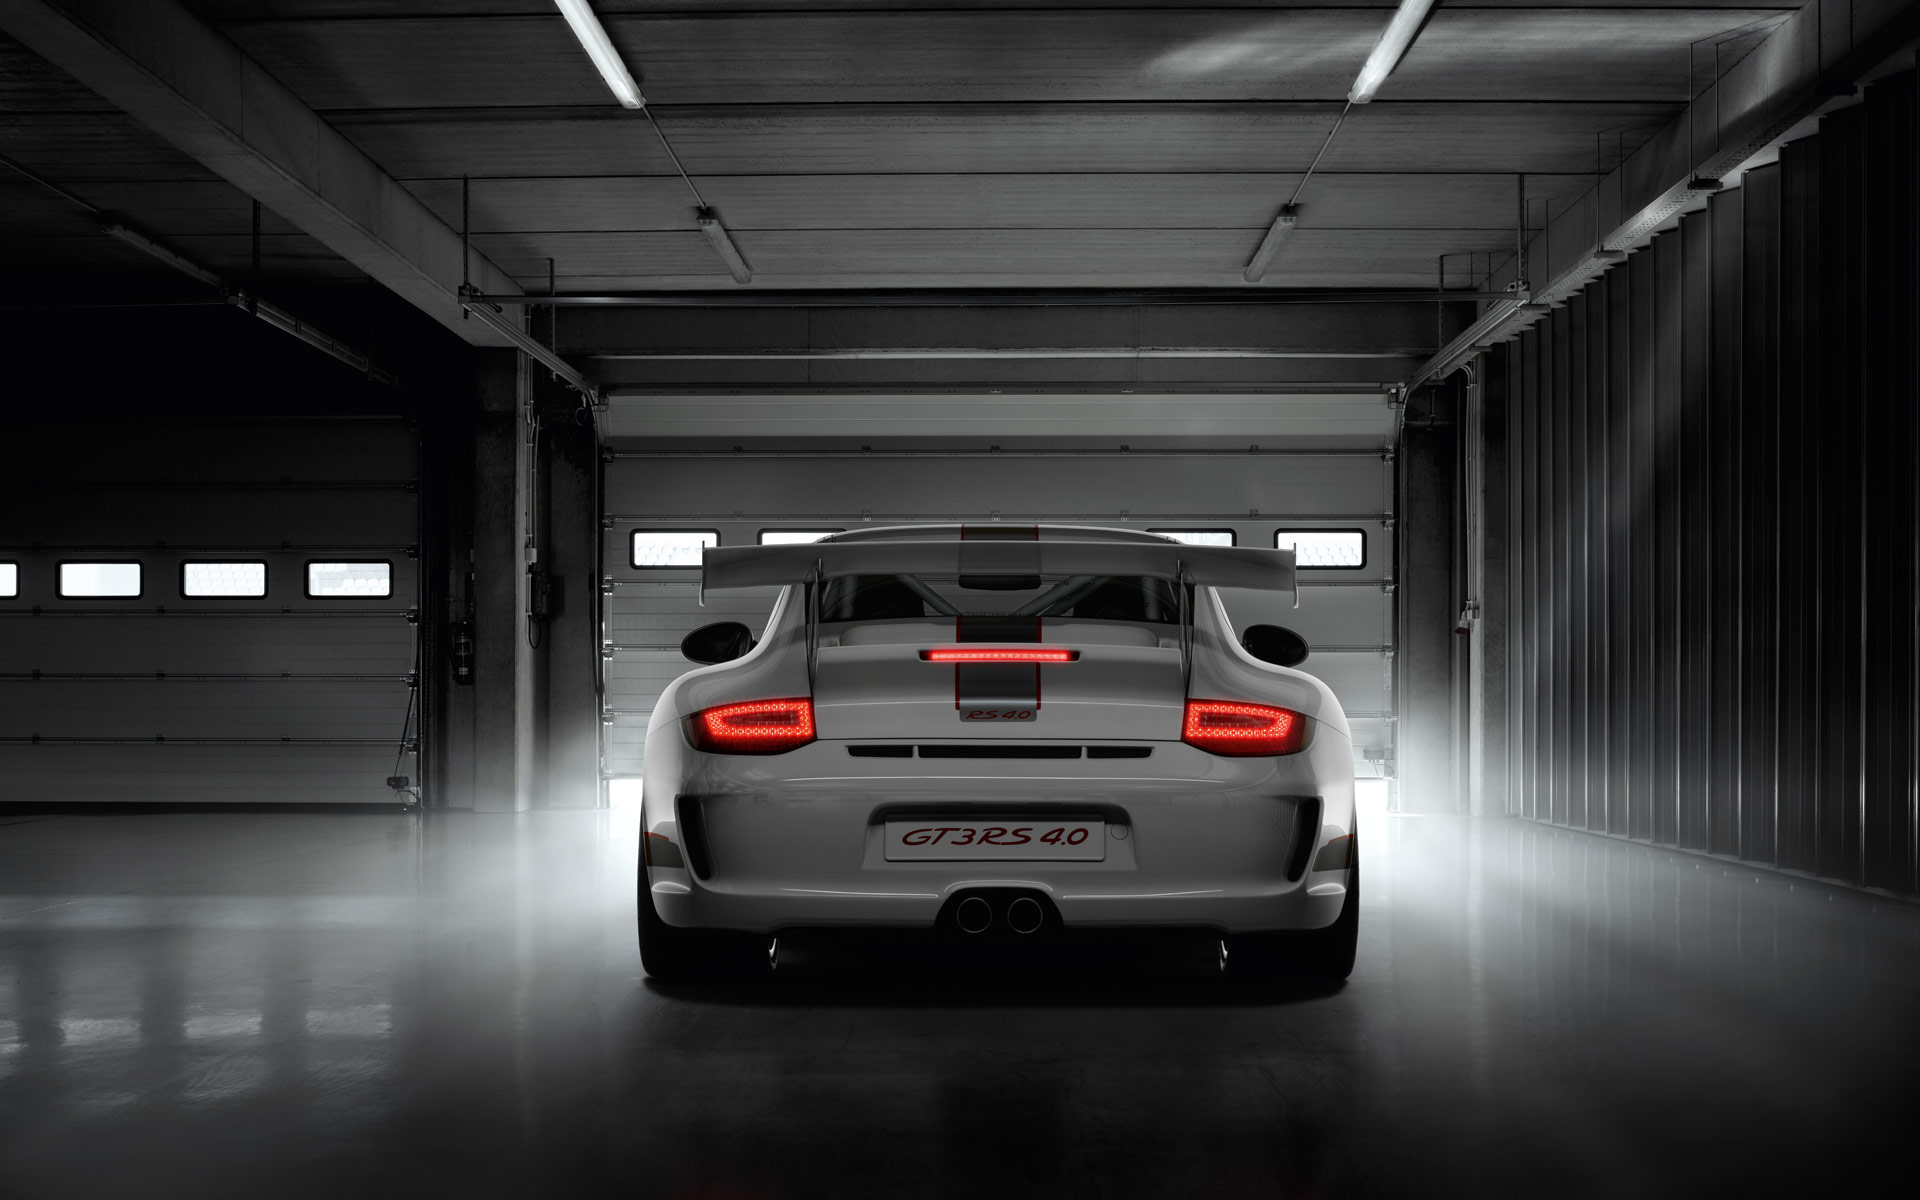 Porsche 911 Gt3 Iphone Wallpaper Hd - HD Wallpaper 